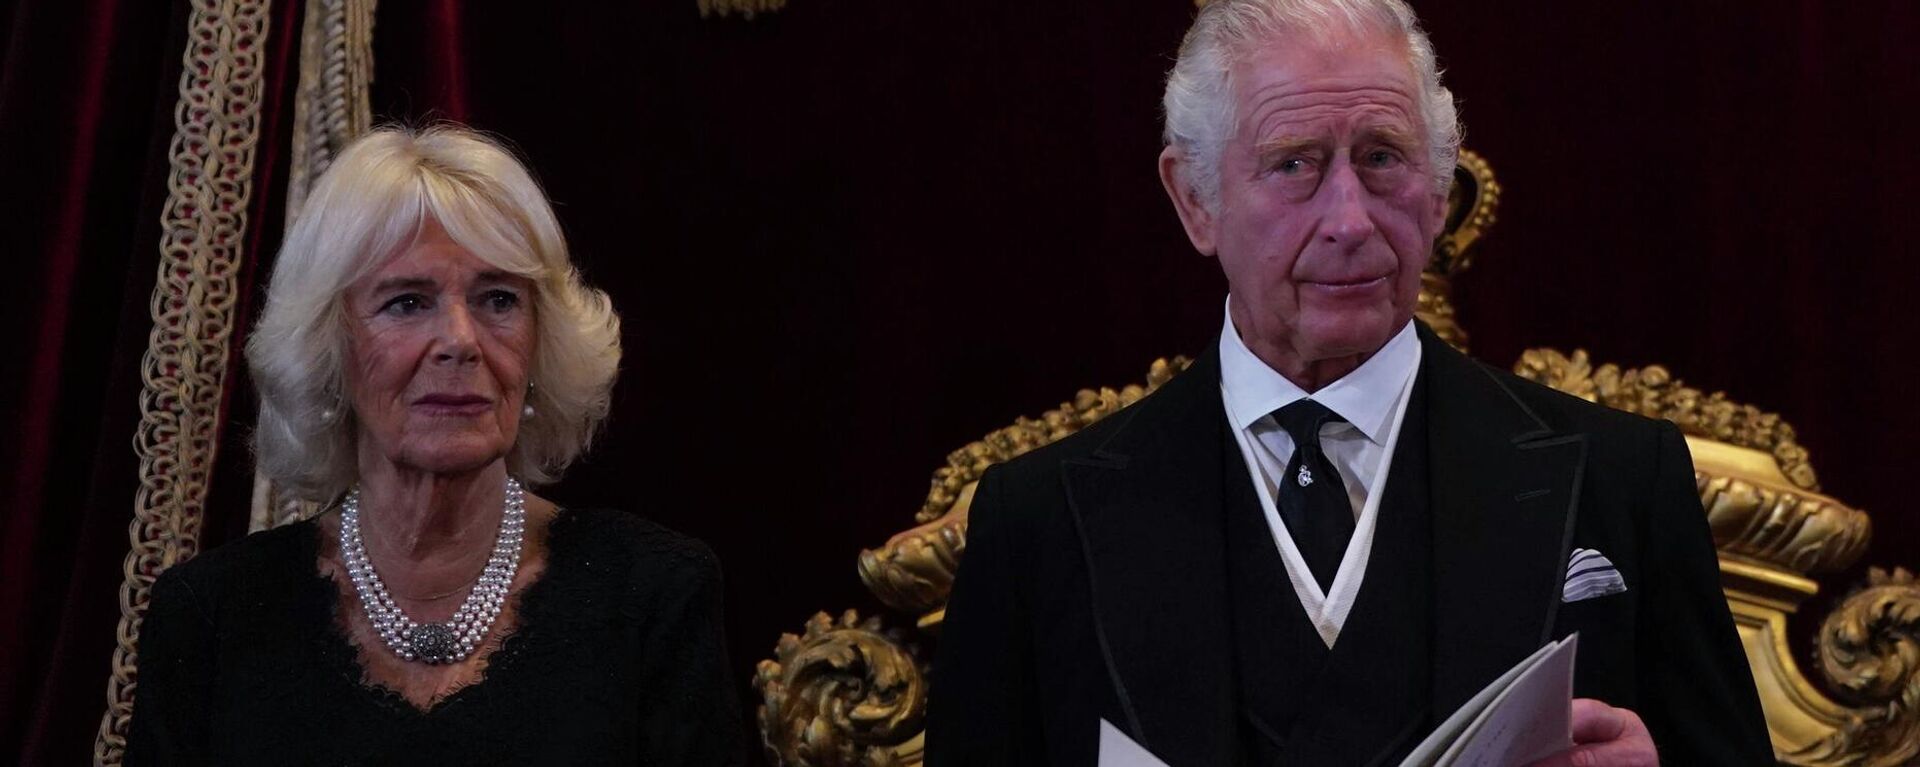 الملك تشارلز الثالث وكاميلا ، قرينة الملكة أثناء مجلس الانضمام في قصر سانت جيمس، لندن، إنجلترا 10 سبتمبر 2022، حيث تم إعلان الملك تشارلز الثالث ملكًا رسميًا. - سبوتنيك عربي, 1920, 31.03.2023